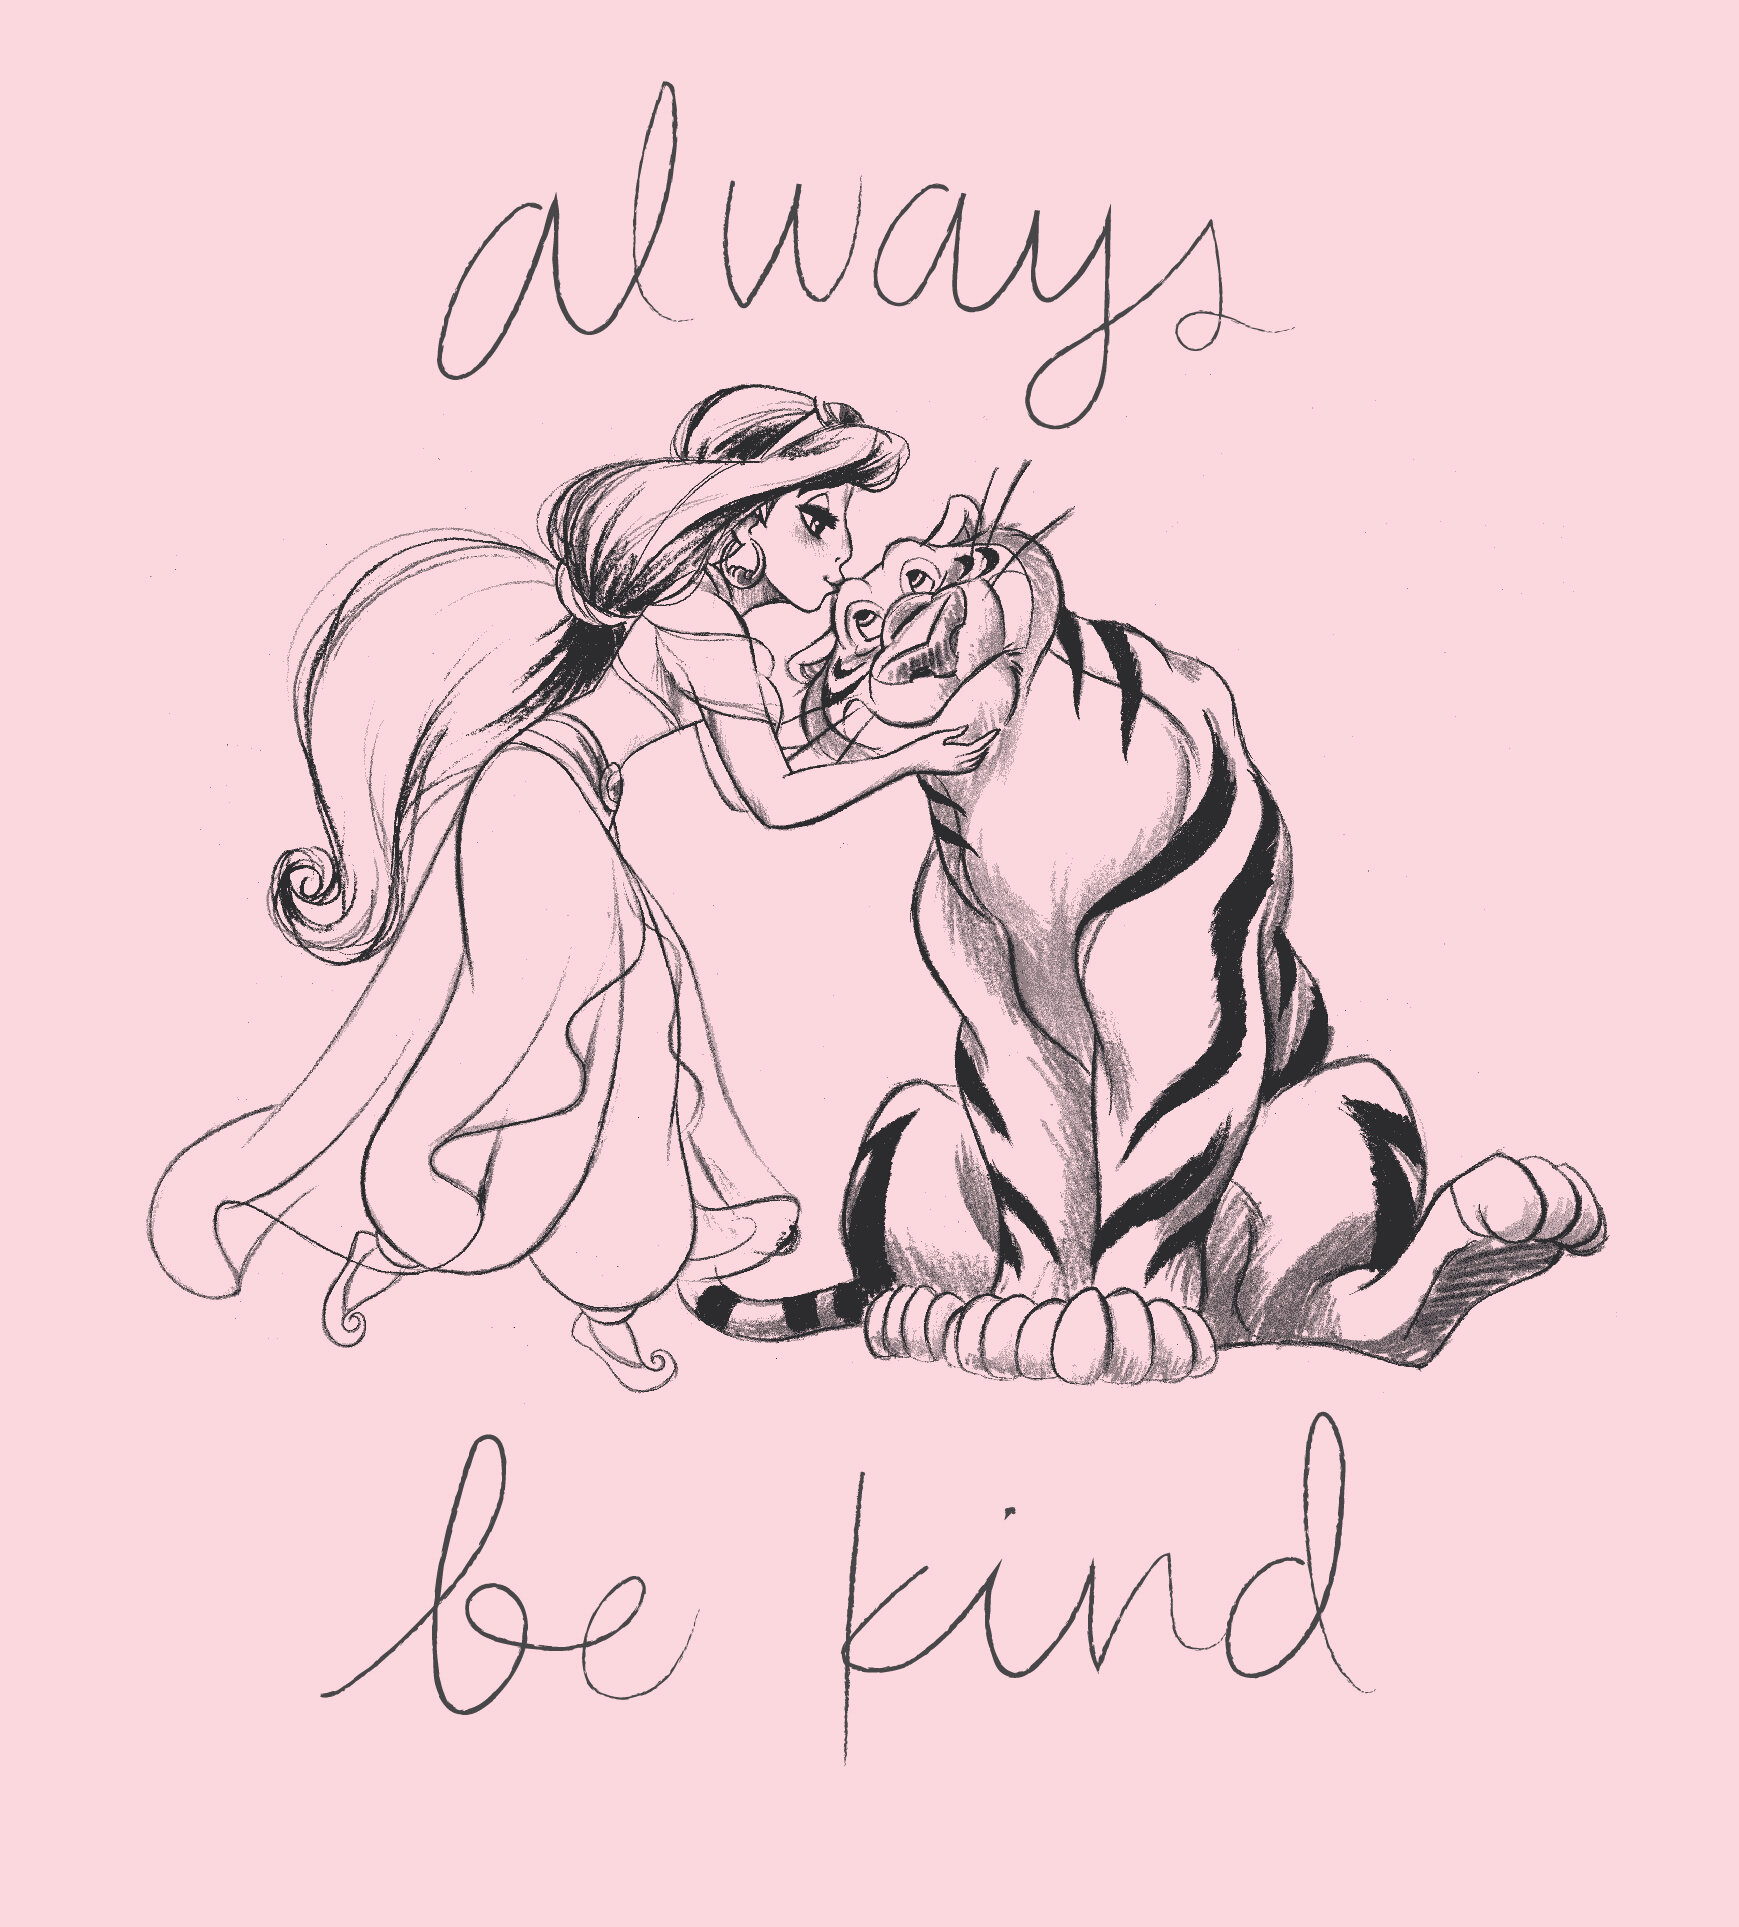 always be kind-01.jpg